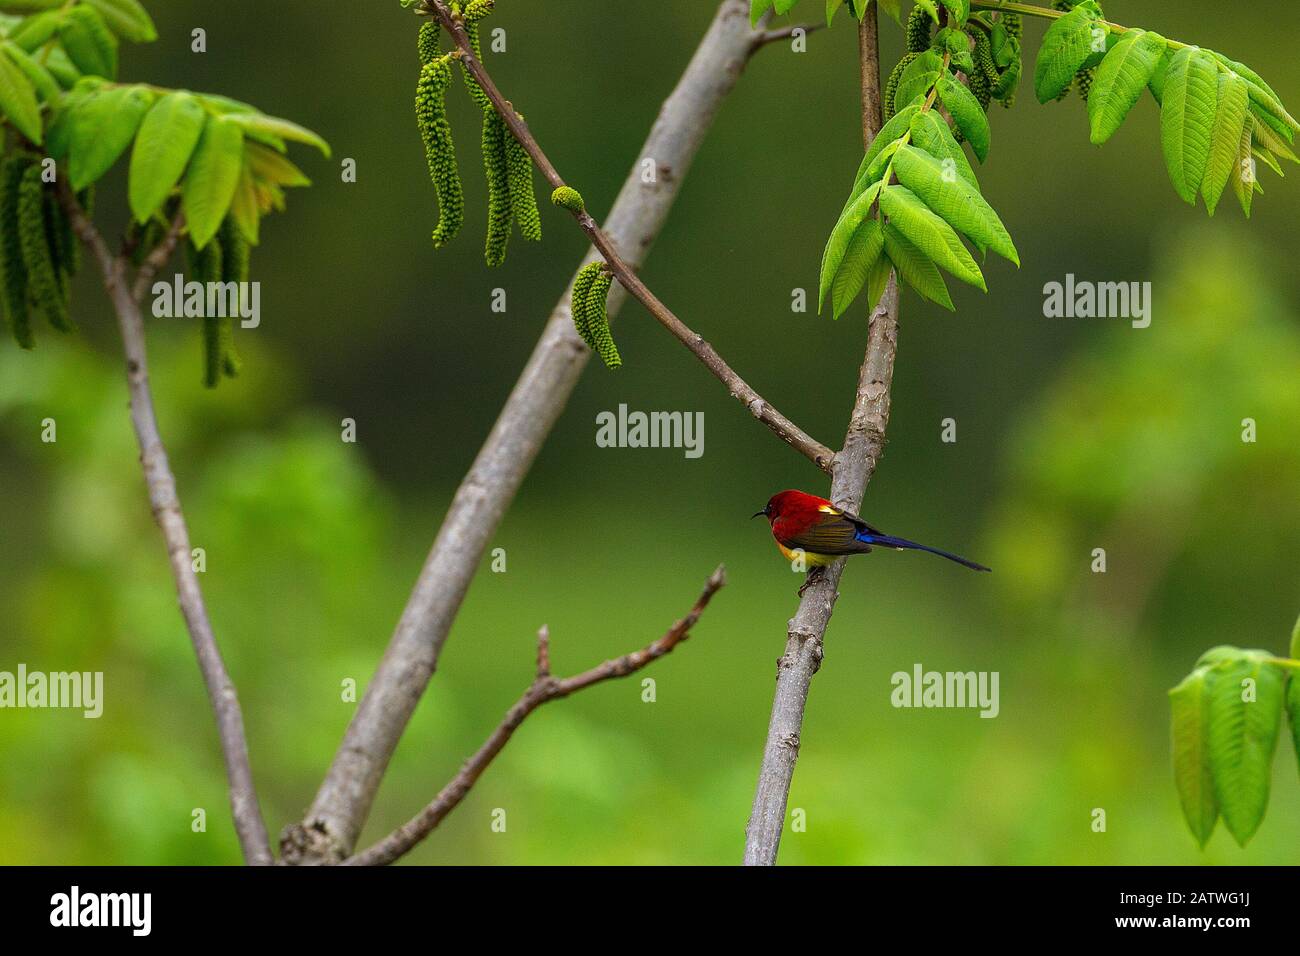 Mme Goulds sunbird (Aethopyga gouldiae) perchée sur la branche, Réserve naturelle de Tangjiahe, province du Sichuan, Chine. Banque D'Images